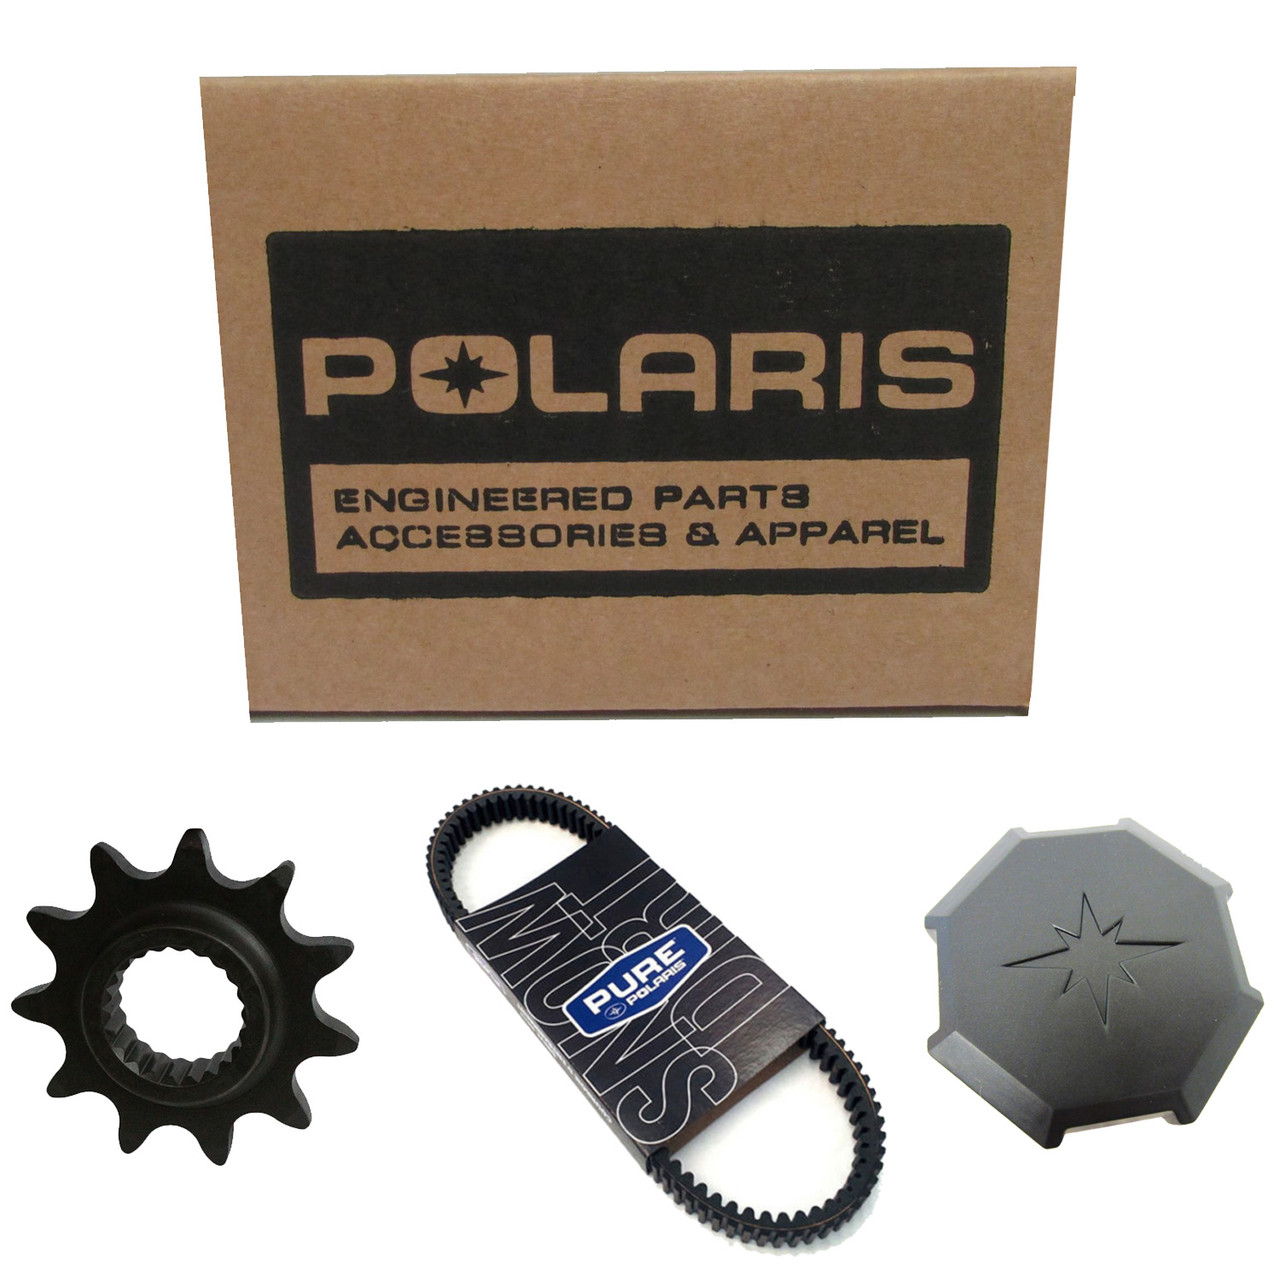 Polaris New OEM "Polaris" Decal, White, 7186888